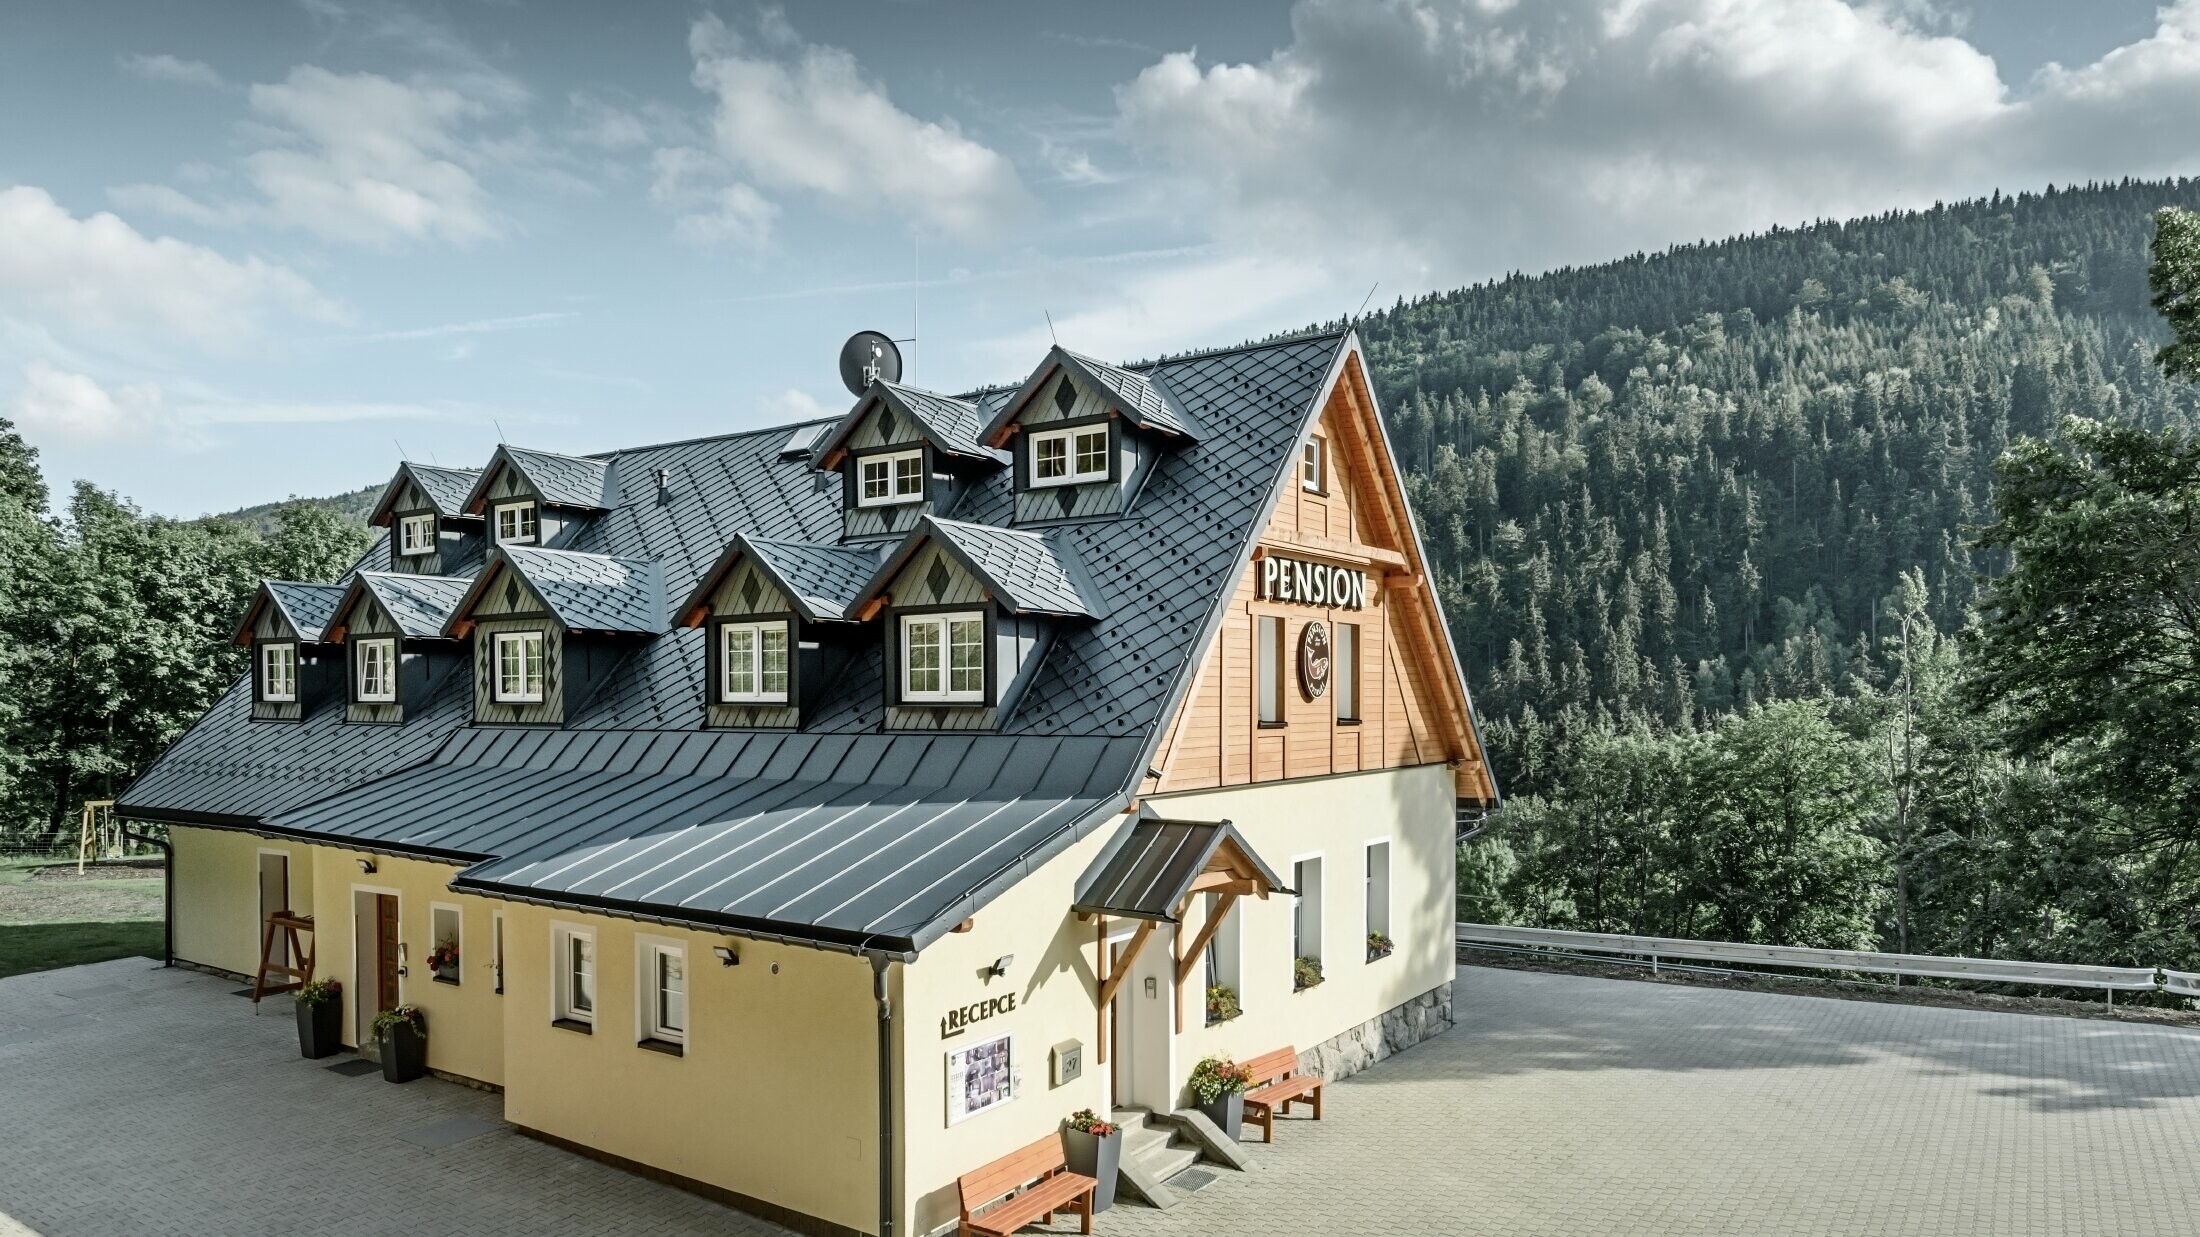 Vertshus i Tsjekkia med bratt tak og mange kobbhus dekket med aluminiumstak fra PREFA, skjellete rombetak med snøbeskyttelse